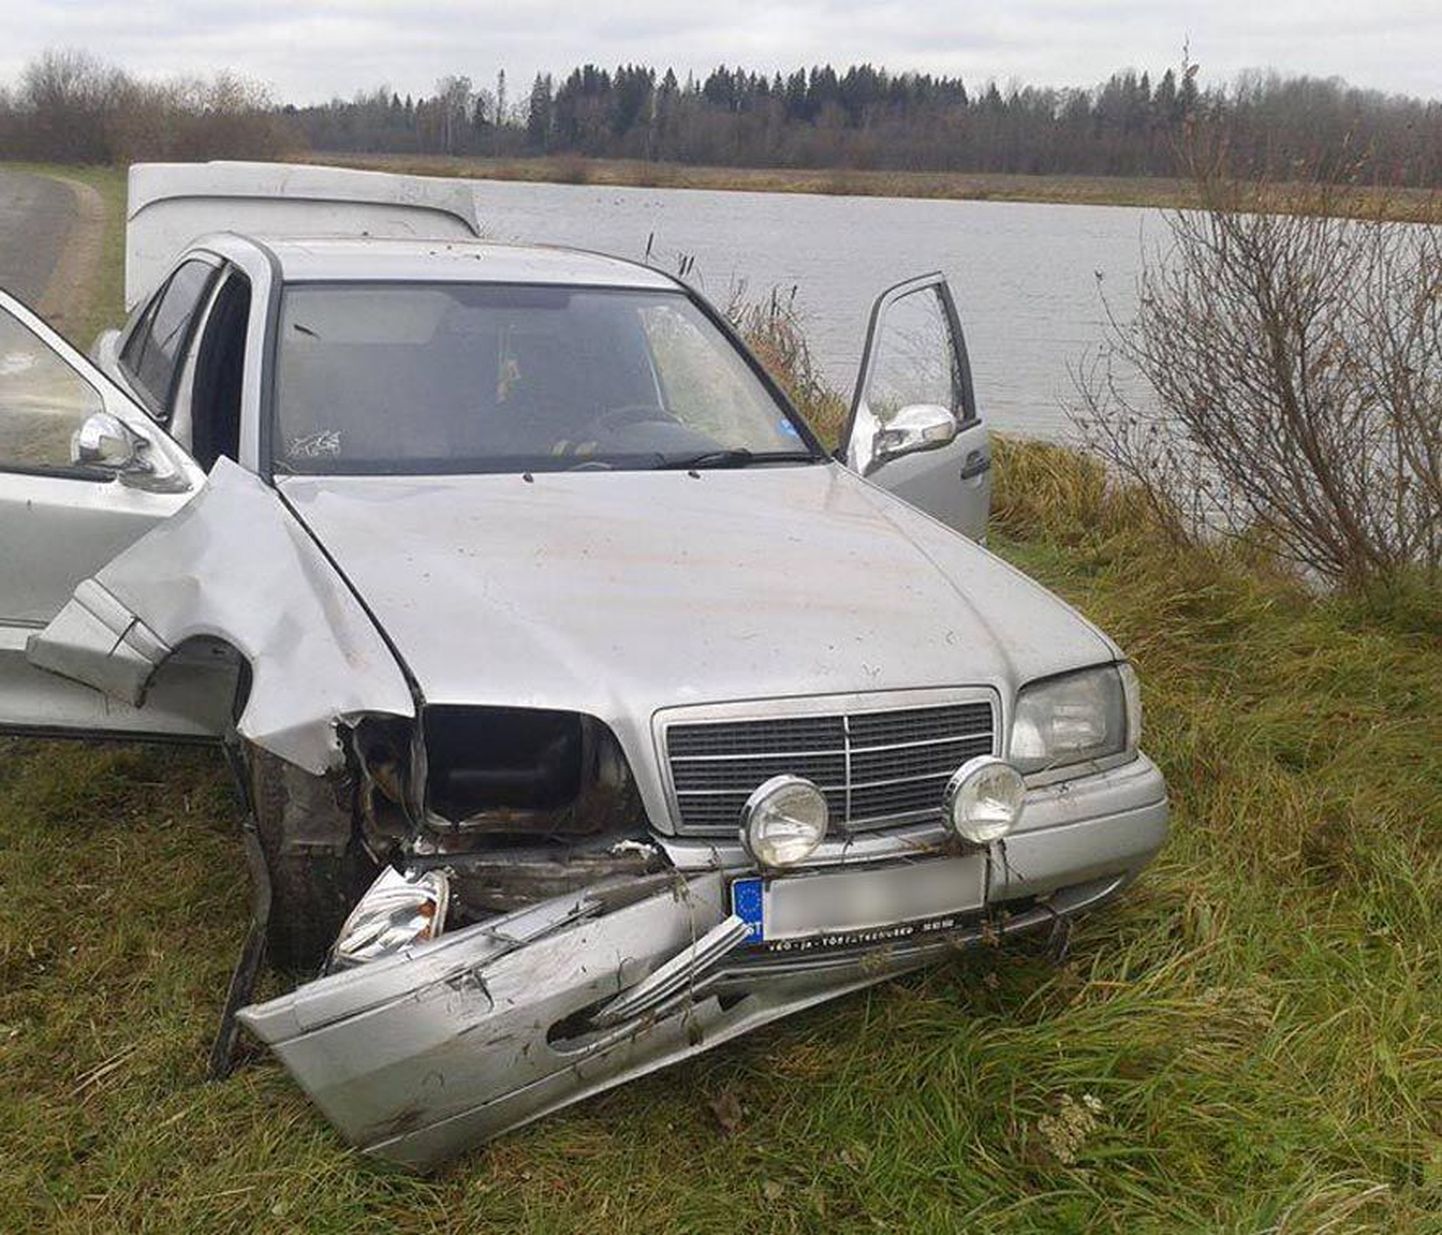 Pühapäeva hilisõhtul Sääsküla ja Aravete vahel Preediku järve kihutanud Mercedes-Benzi juht pääses vigastusteta, pildil on päästeameti töötajad auto juba järvest välja tõmmanud.